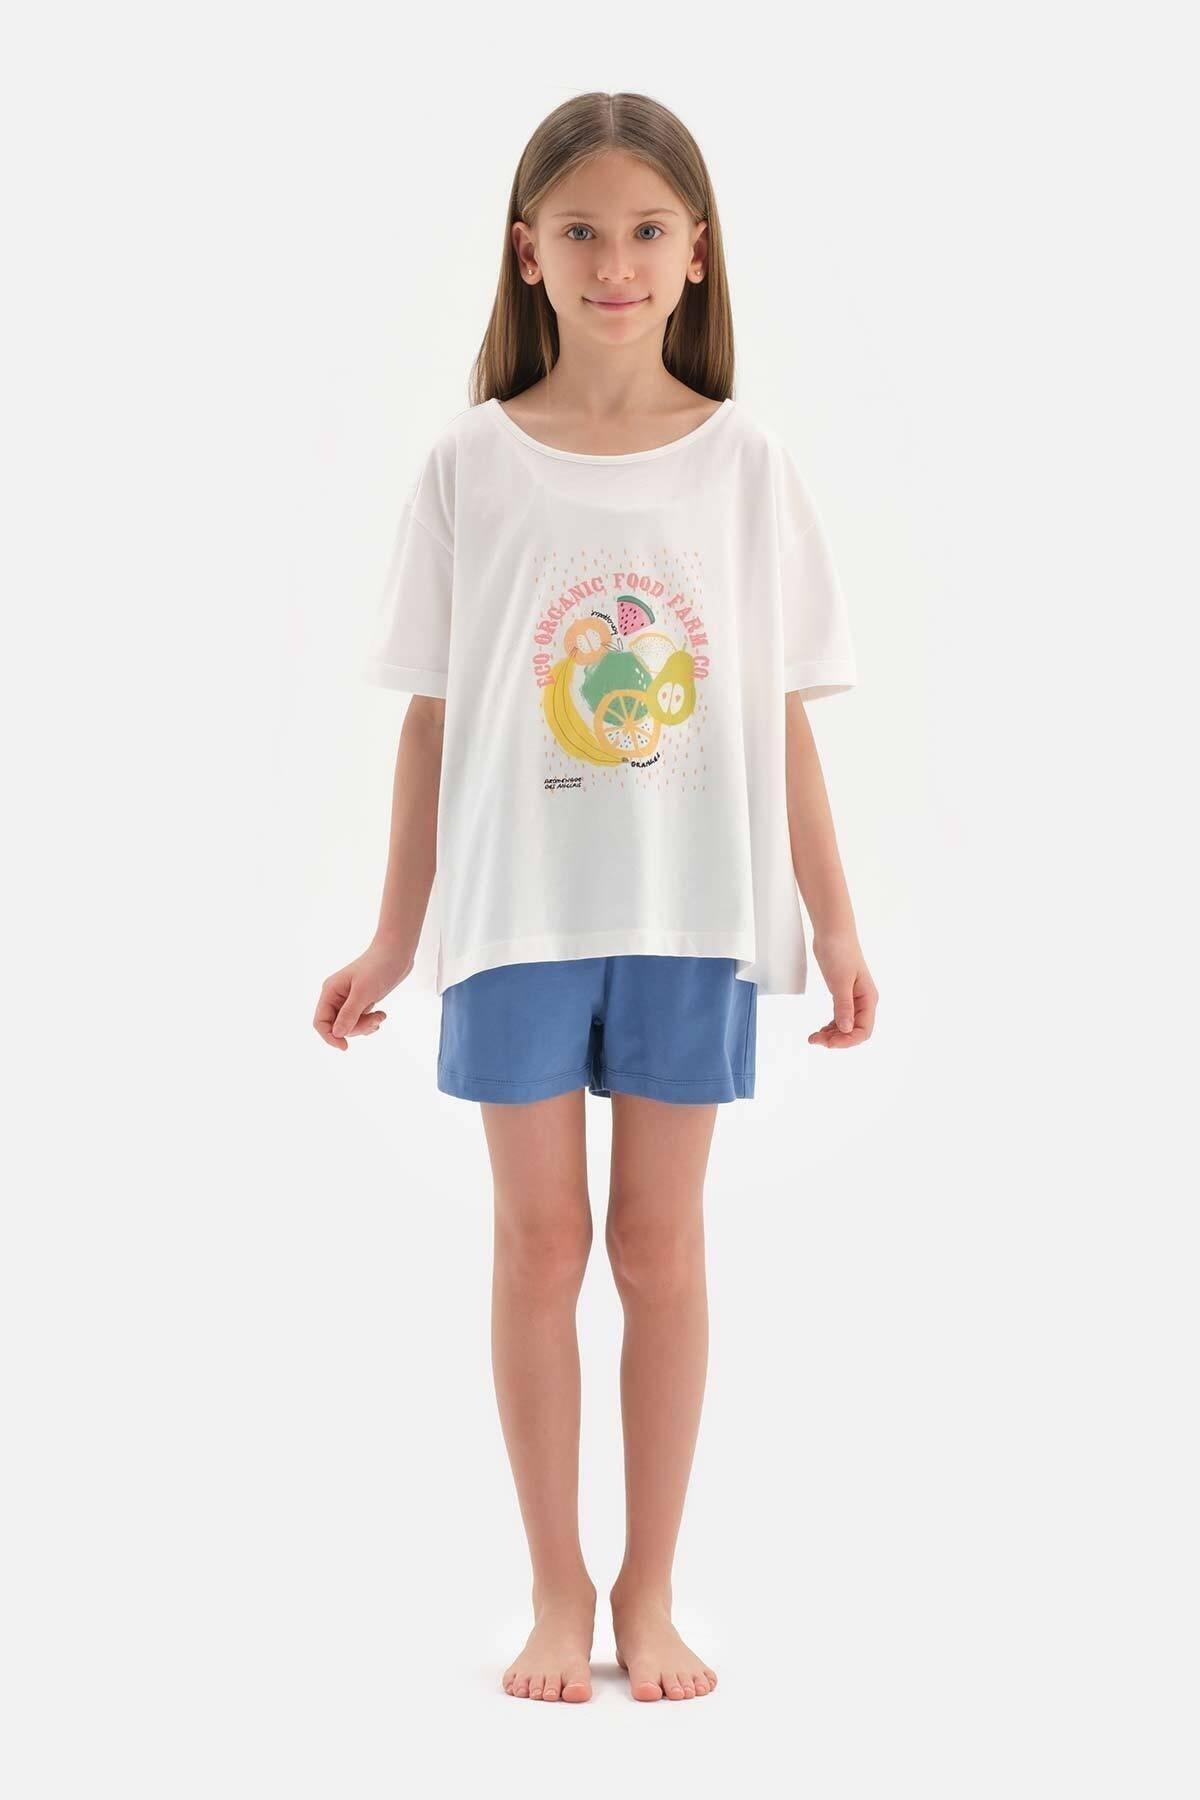 Dagi - White Print Detailed Short Sleeve Pyjamas Set, Kids Boys